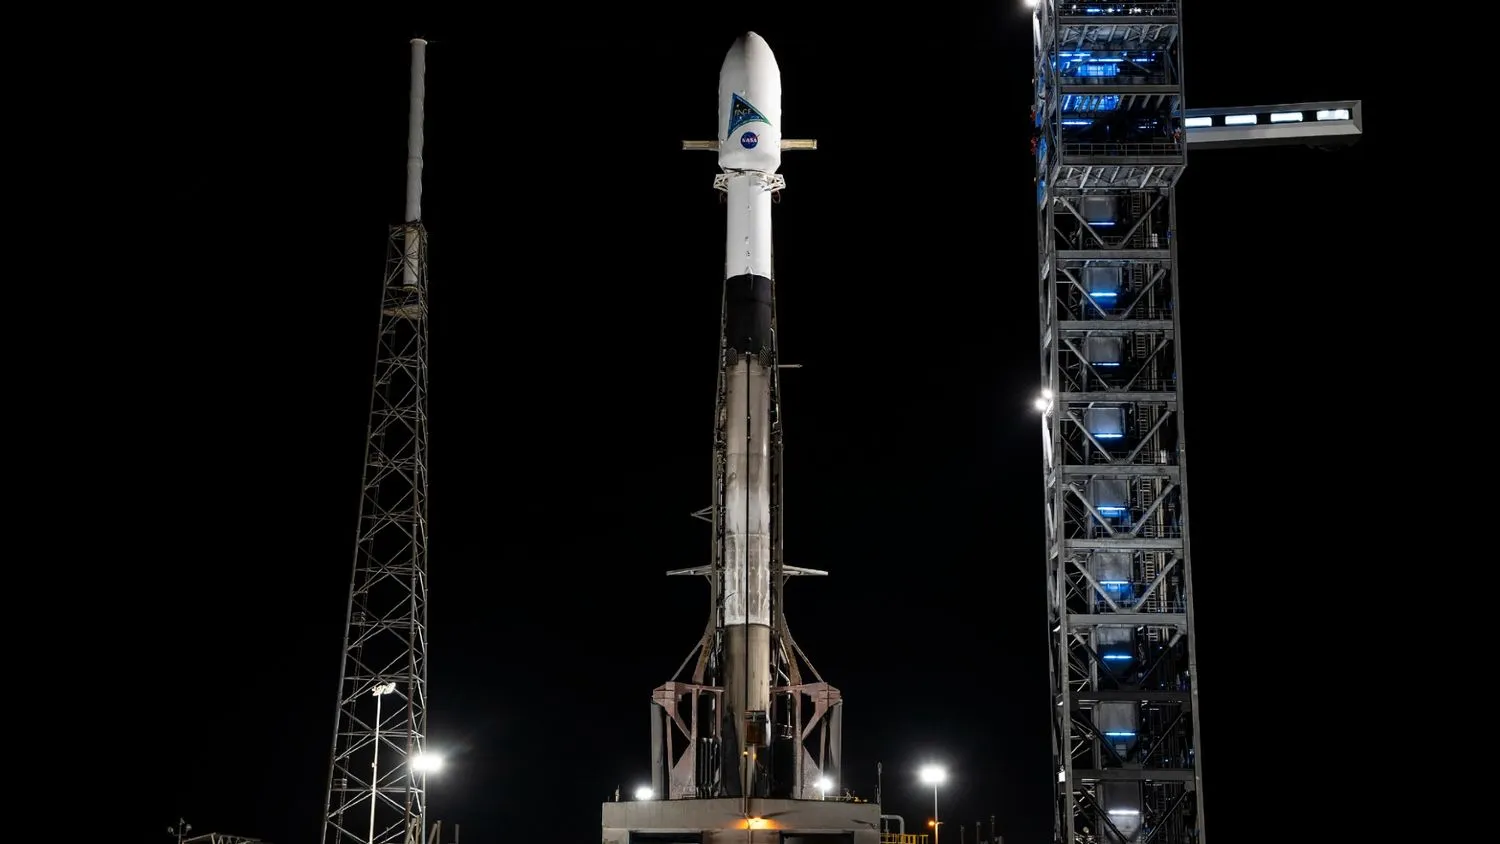 eine Rakete steht aufrecht auf der Startrampe bei Nacht mit einer großen weißen Nutzlast oben drauf